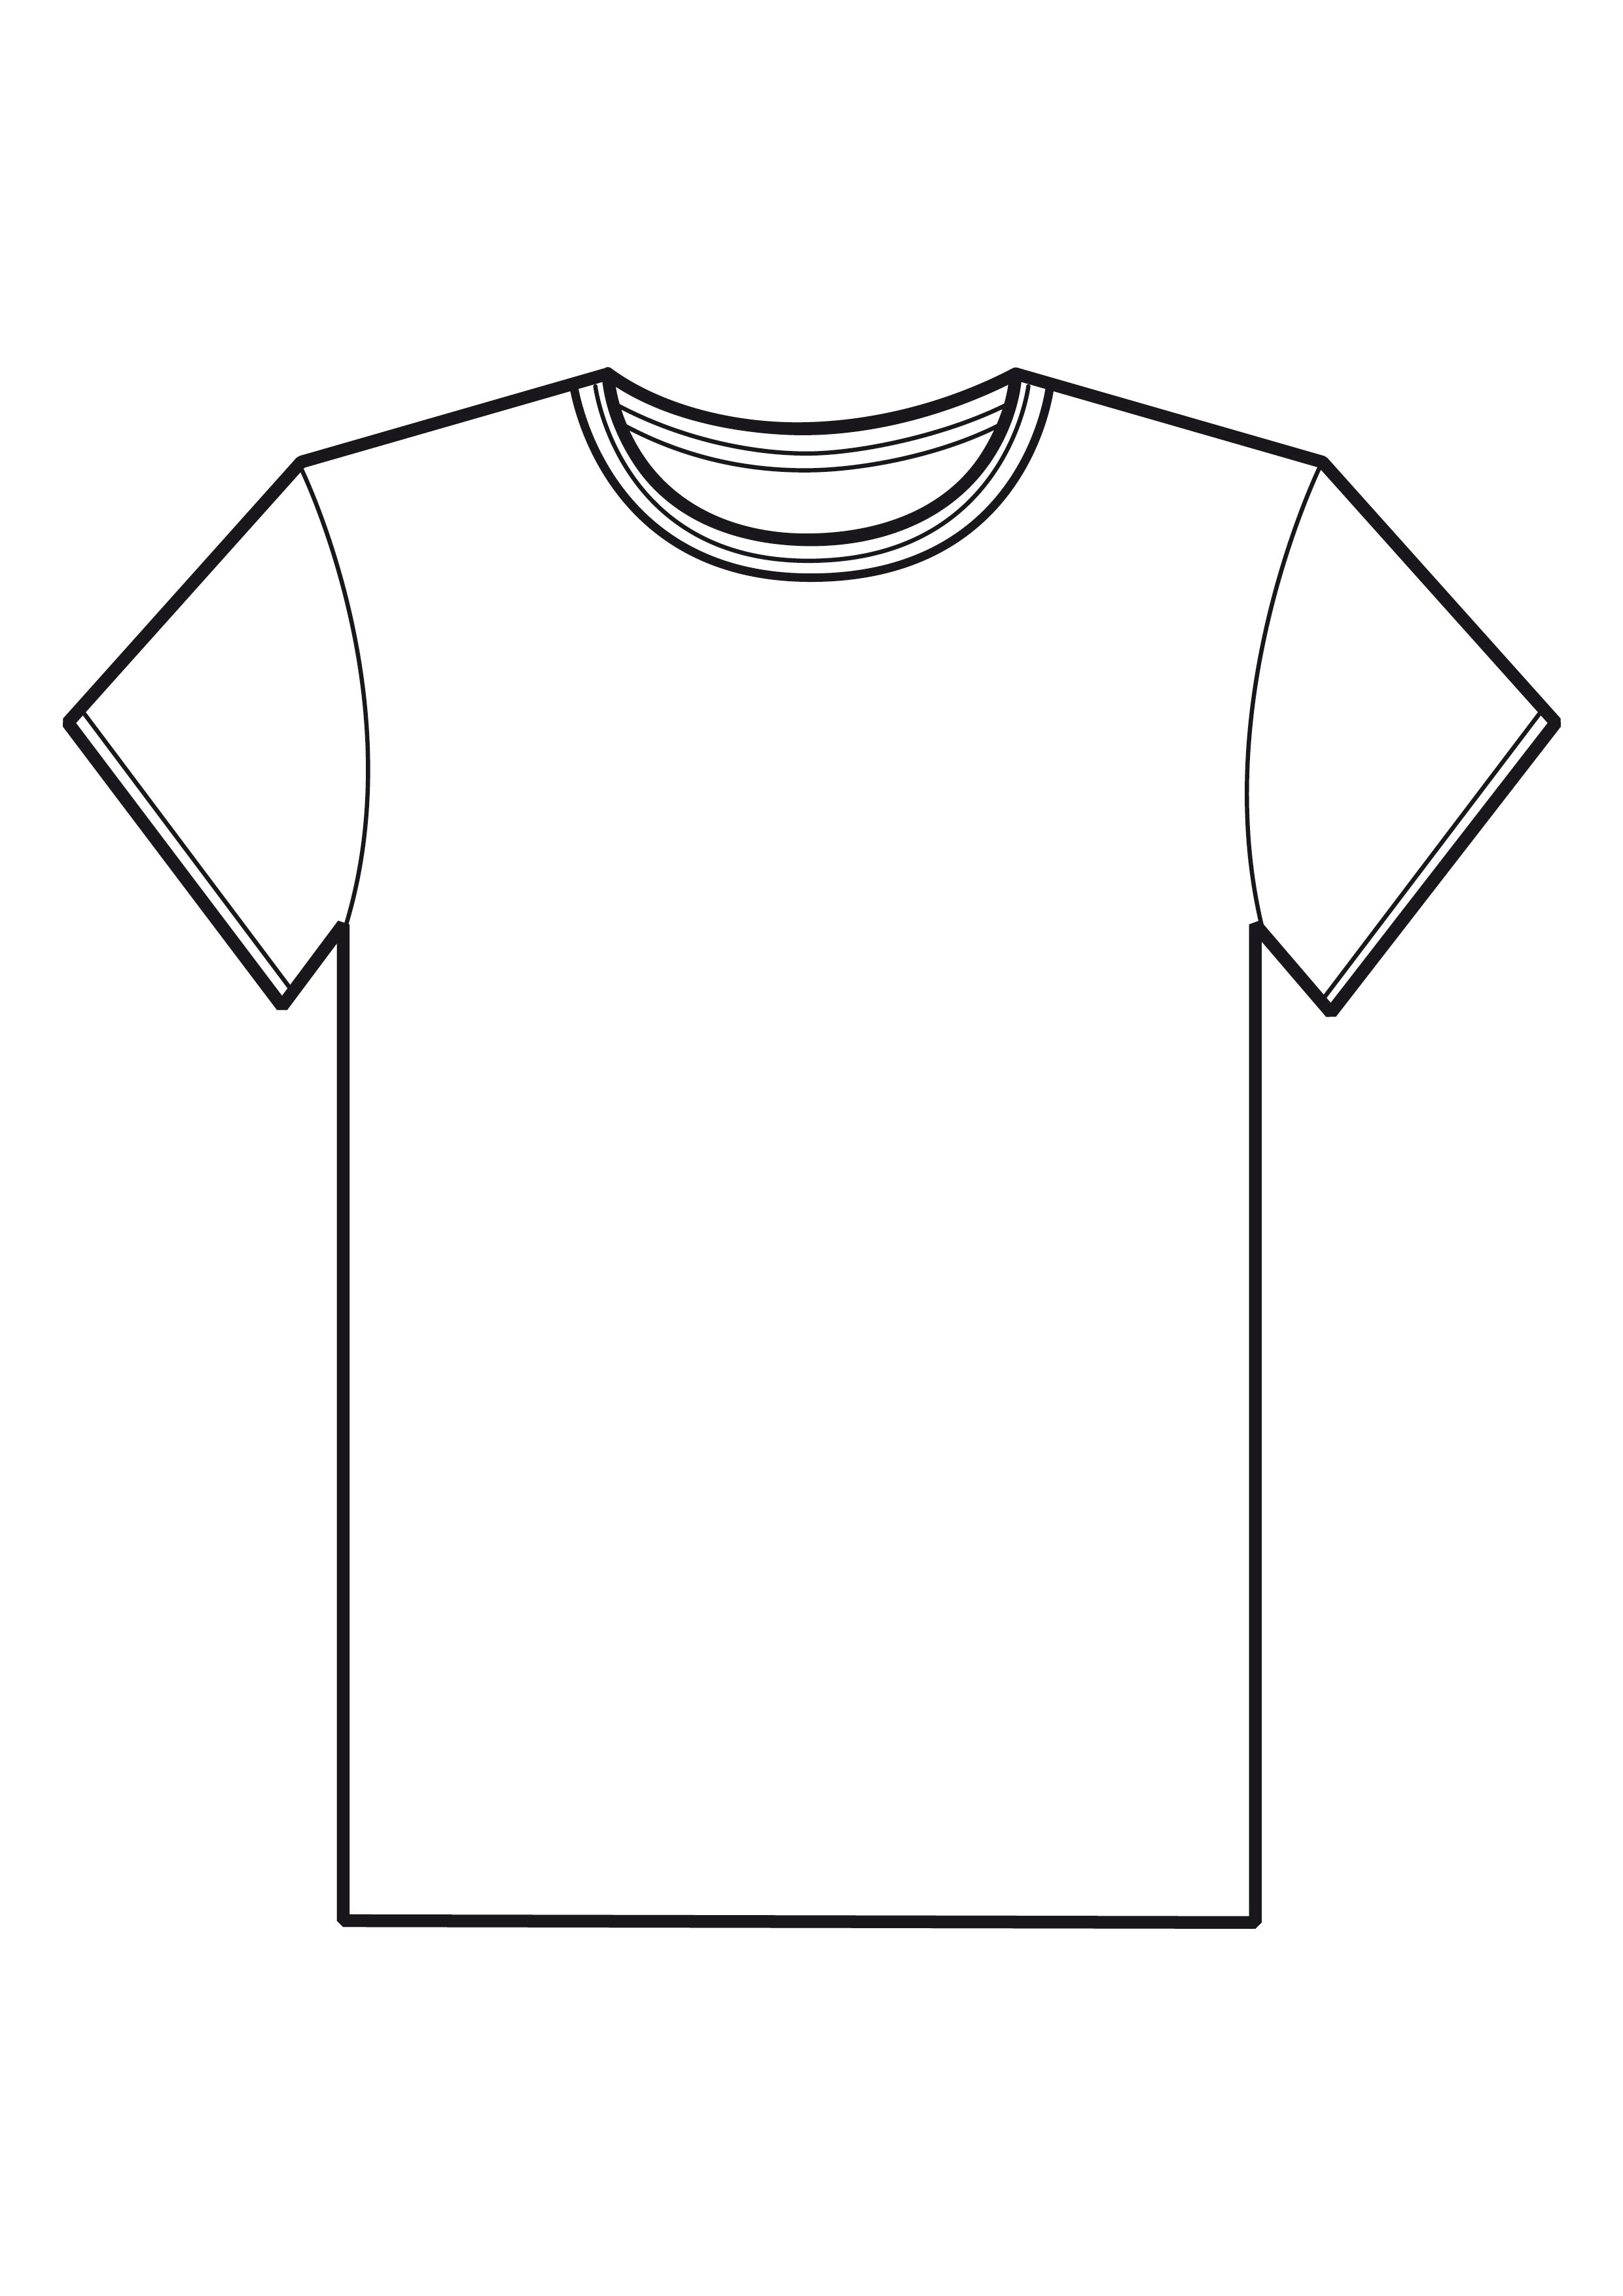 Plain T Shirt Template